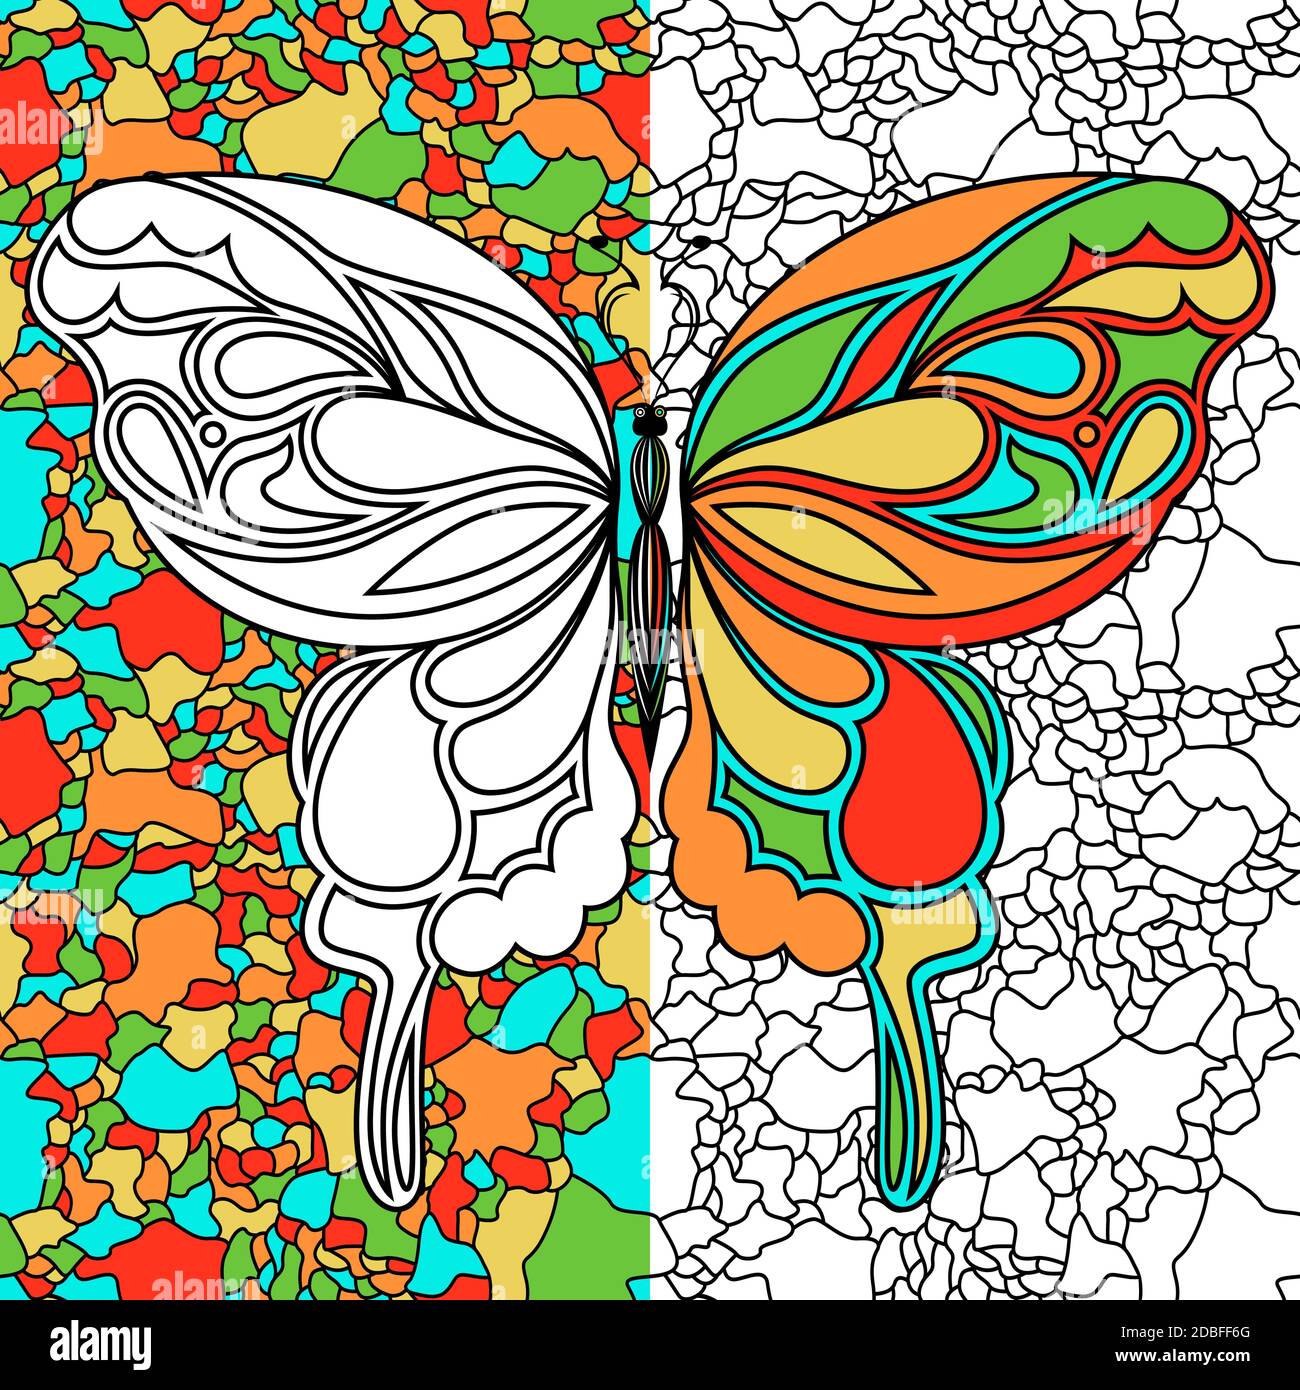 Bunte Zierschablonen von schönen Schmetterling auf dem Mosaik-Hintergrund, Handzeichnung Vektor-Illustration als Malbuch Stock Vektor